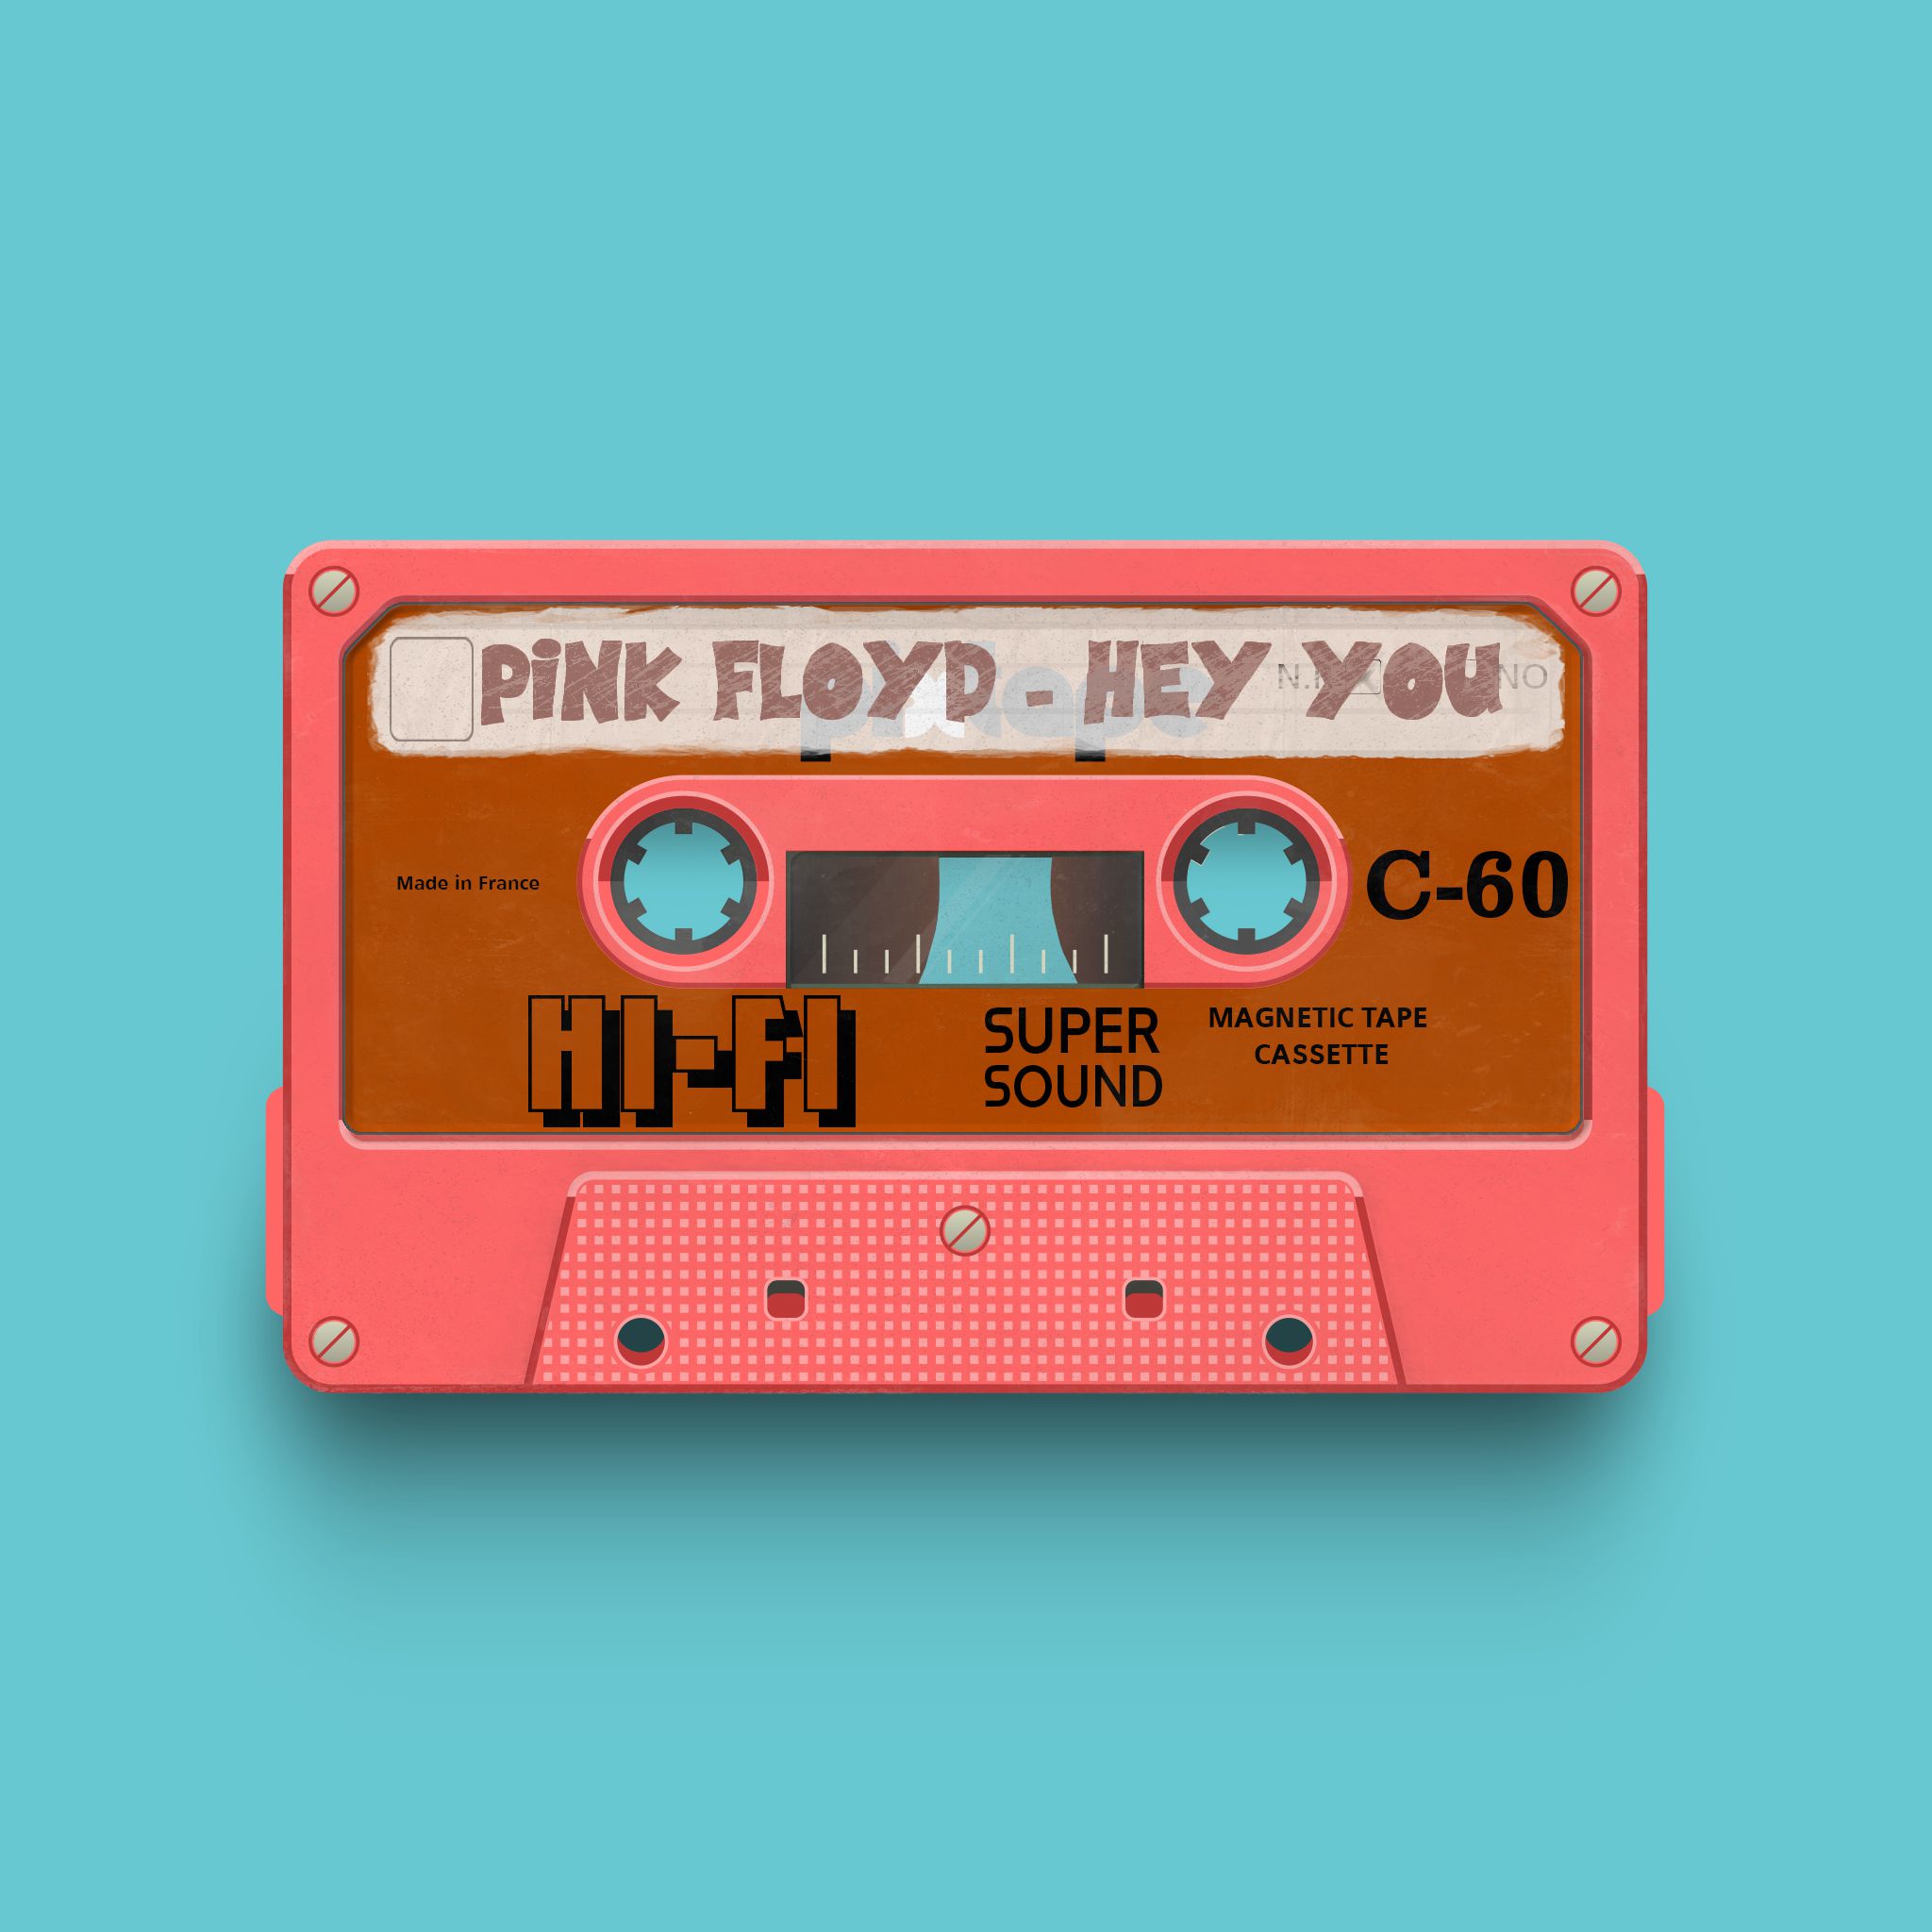 PixTape #6363, Pink Floyd - Hey You